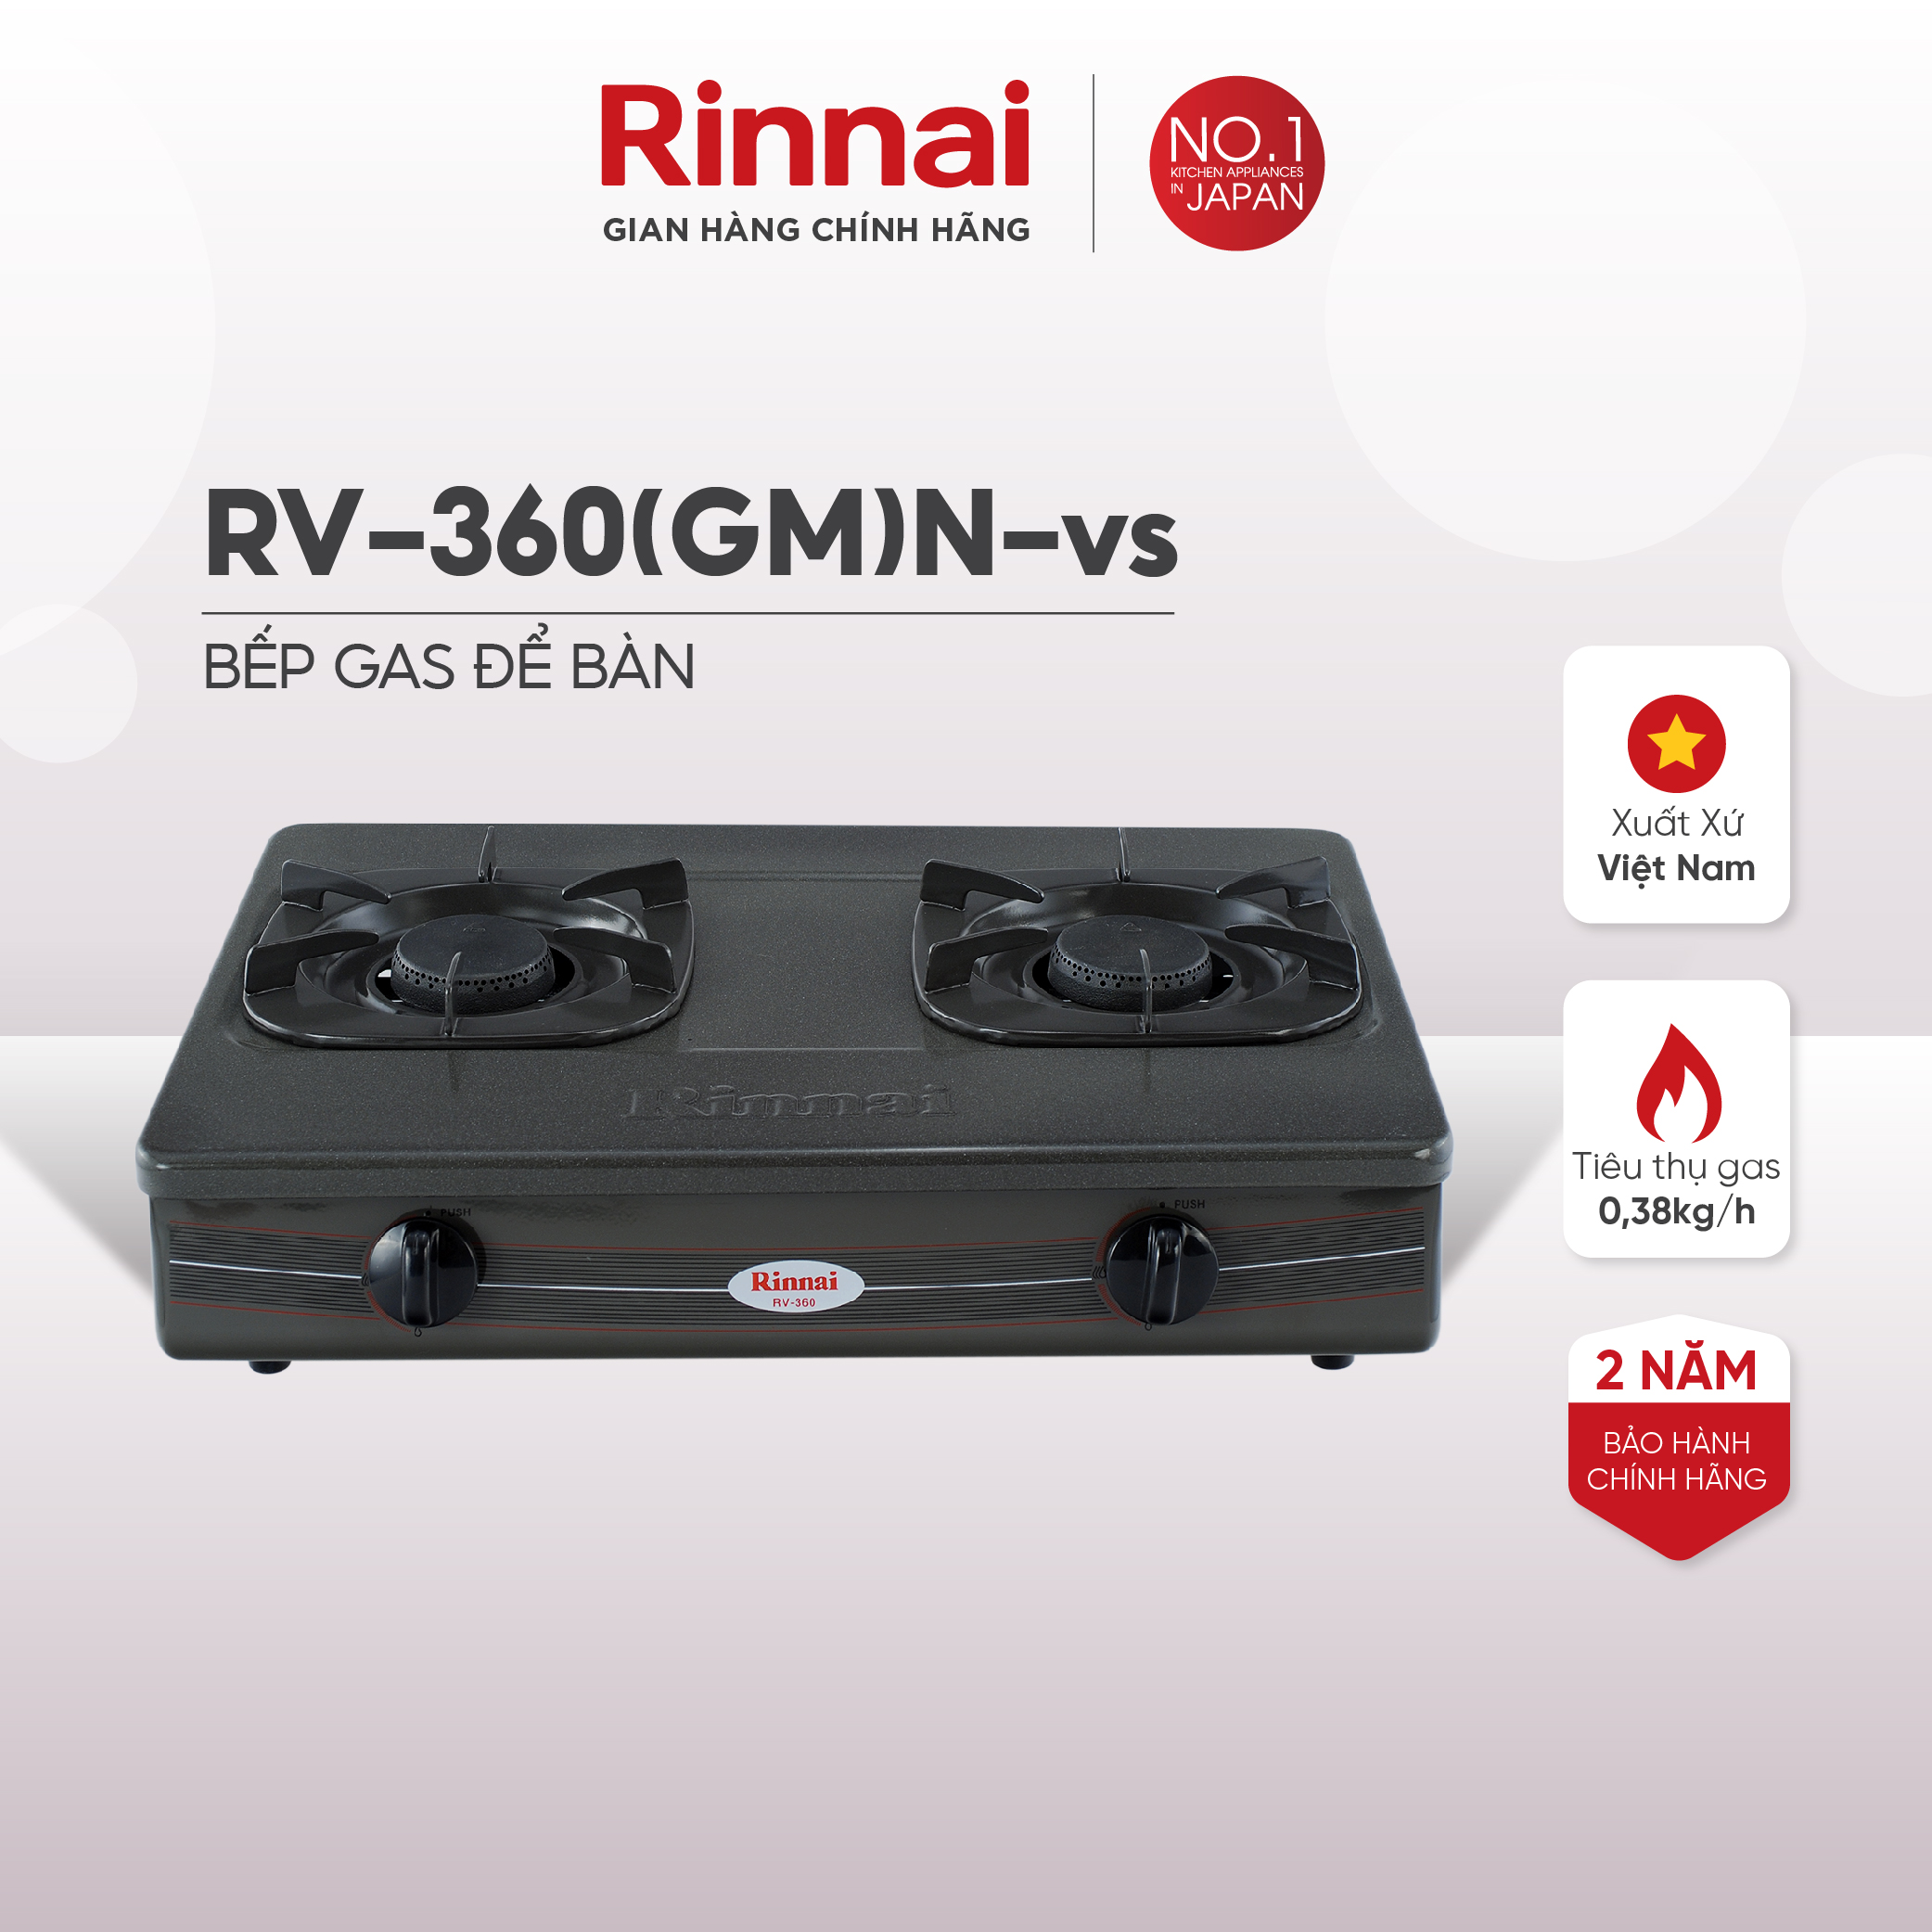 Bếp gas dương Rinnai RV-360(GM)N mặt bếp men và kiềng bếp men - Hàng chính hãng.